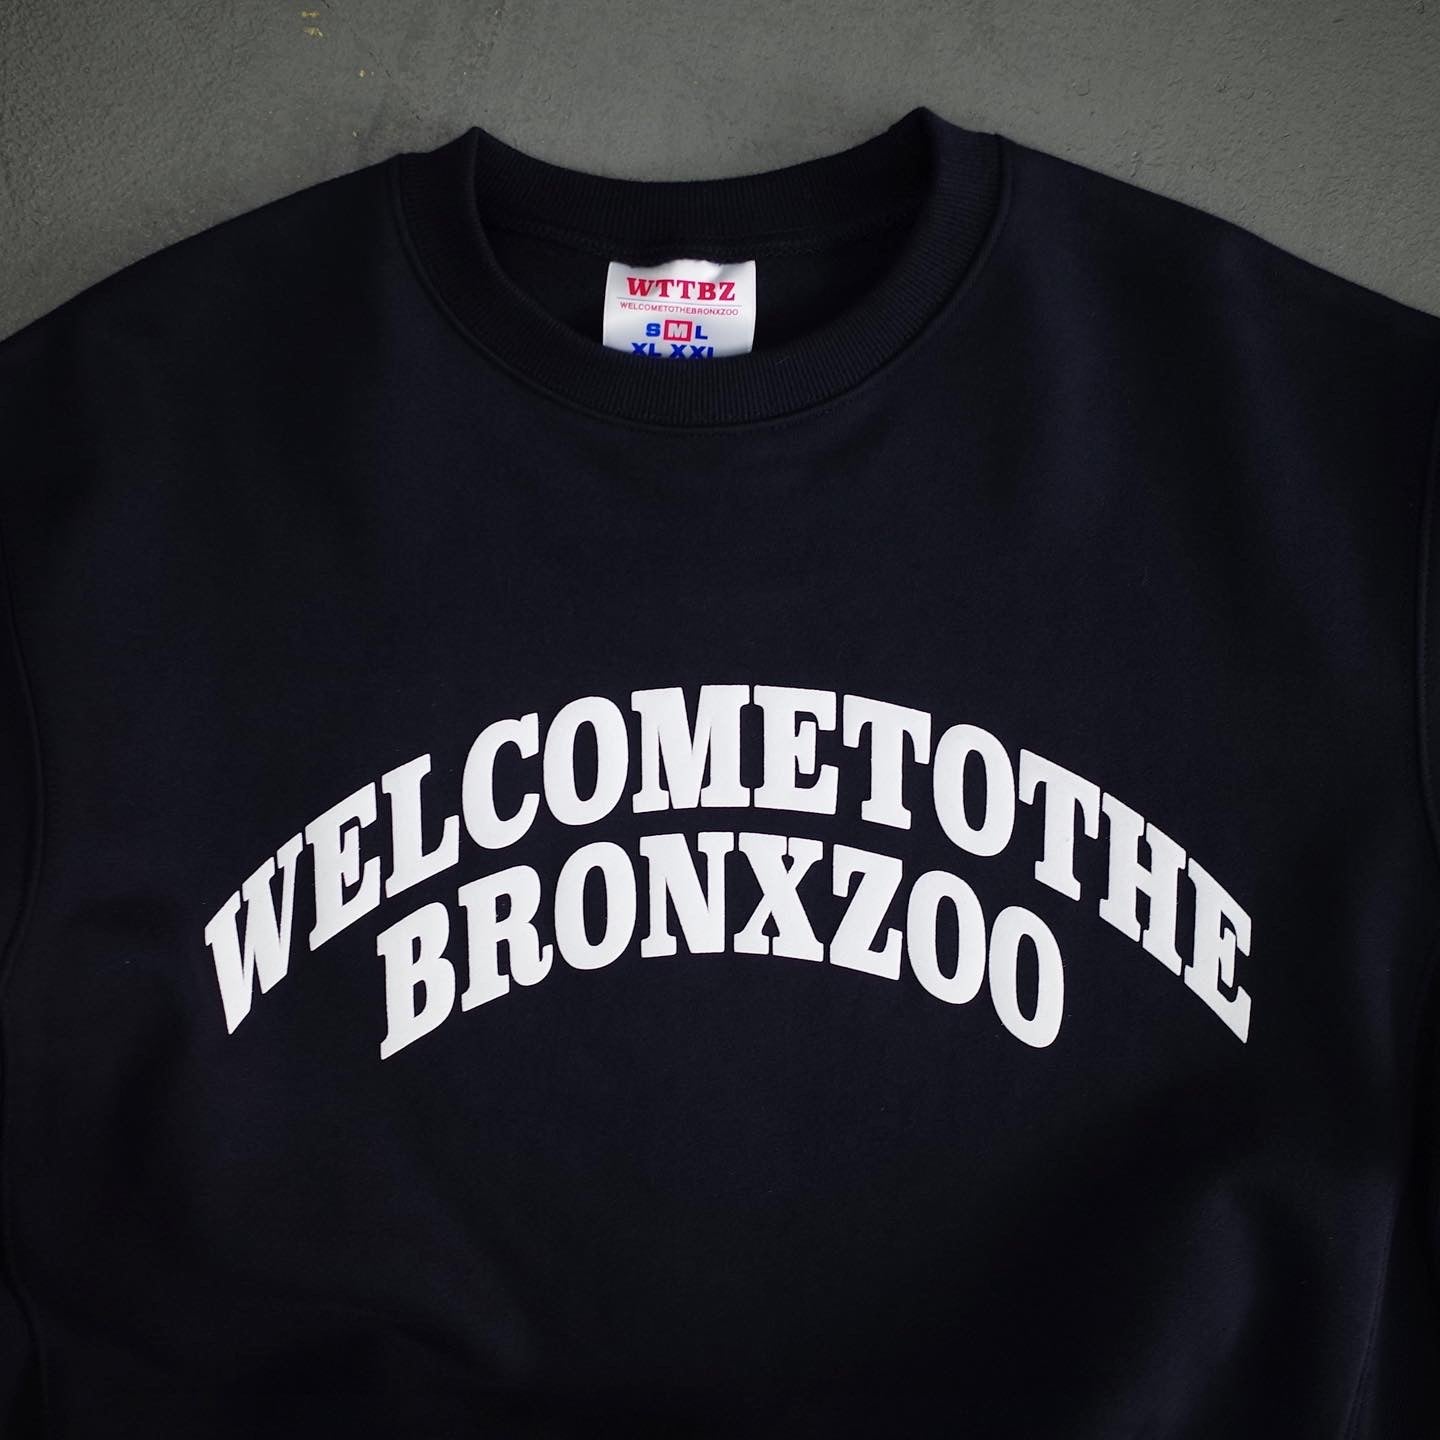 WELCOMETOTHEBRONXZOO Sweatshirt by @welcometothebronxzoo.1923